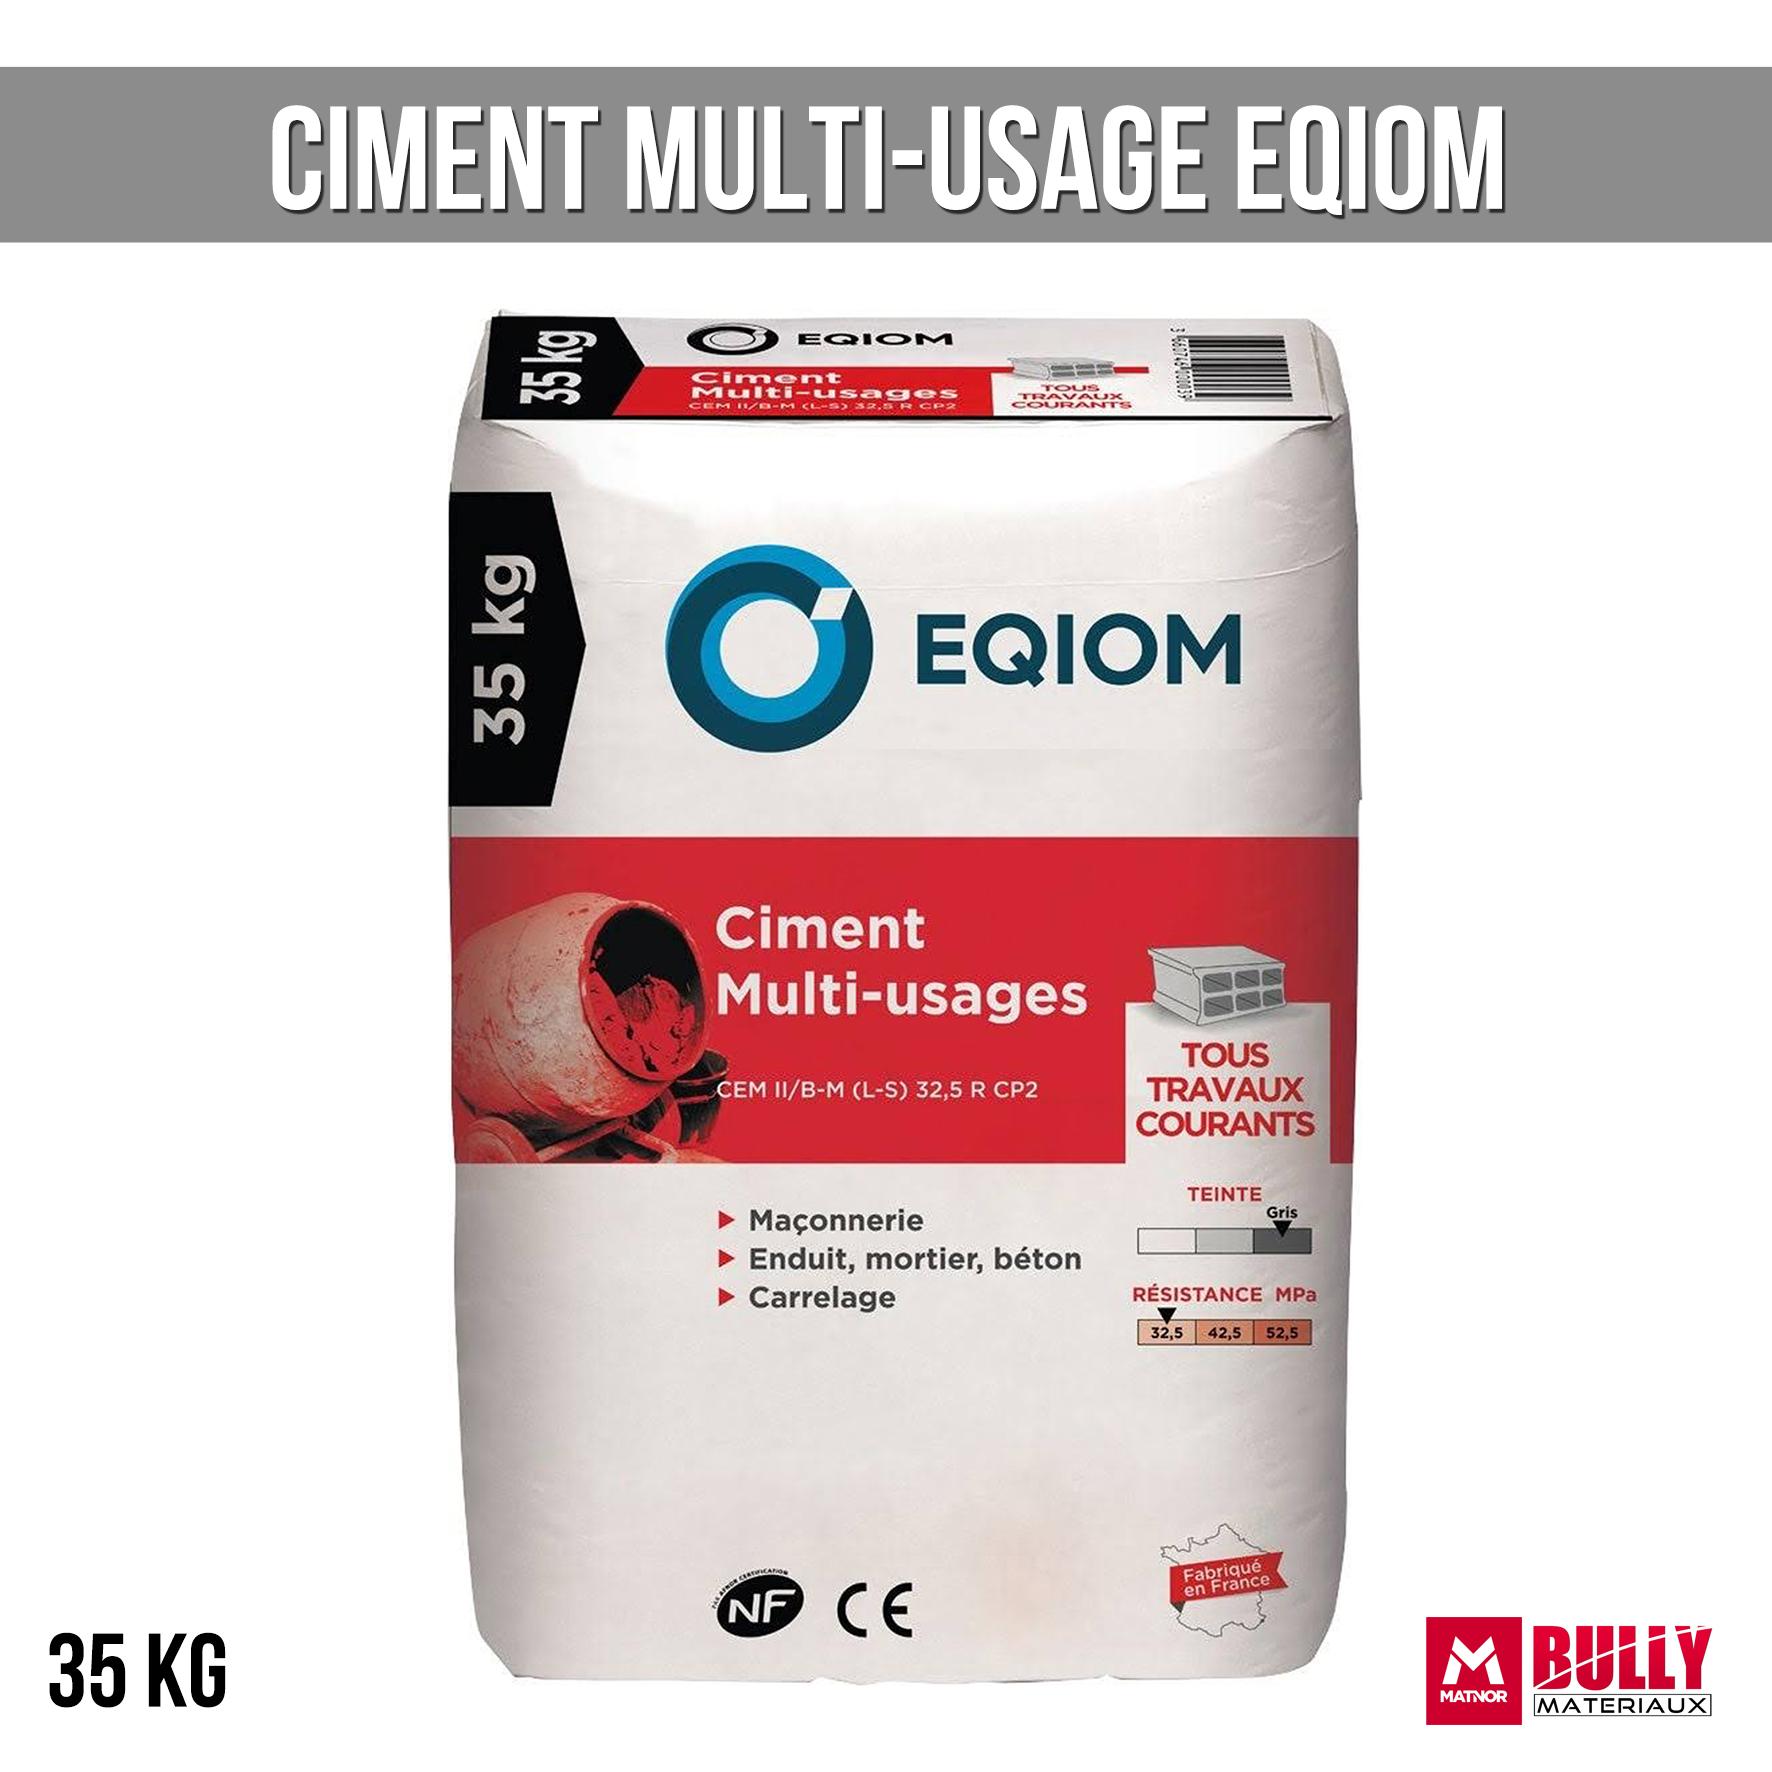 Ciment multi usage eqiom 35kg